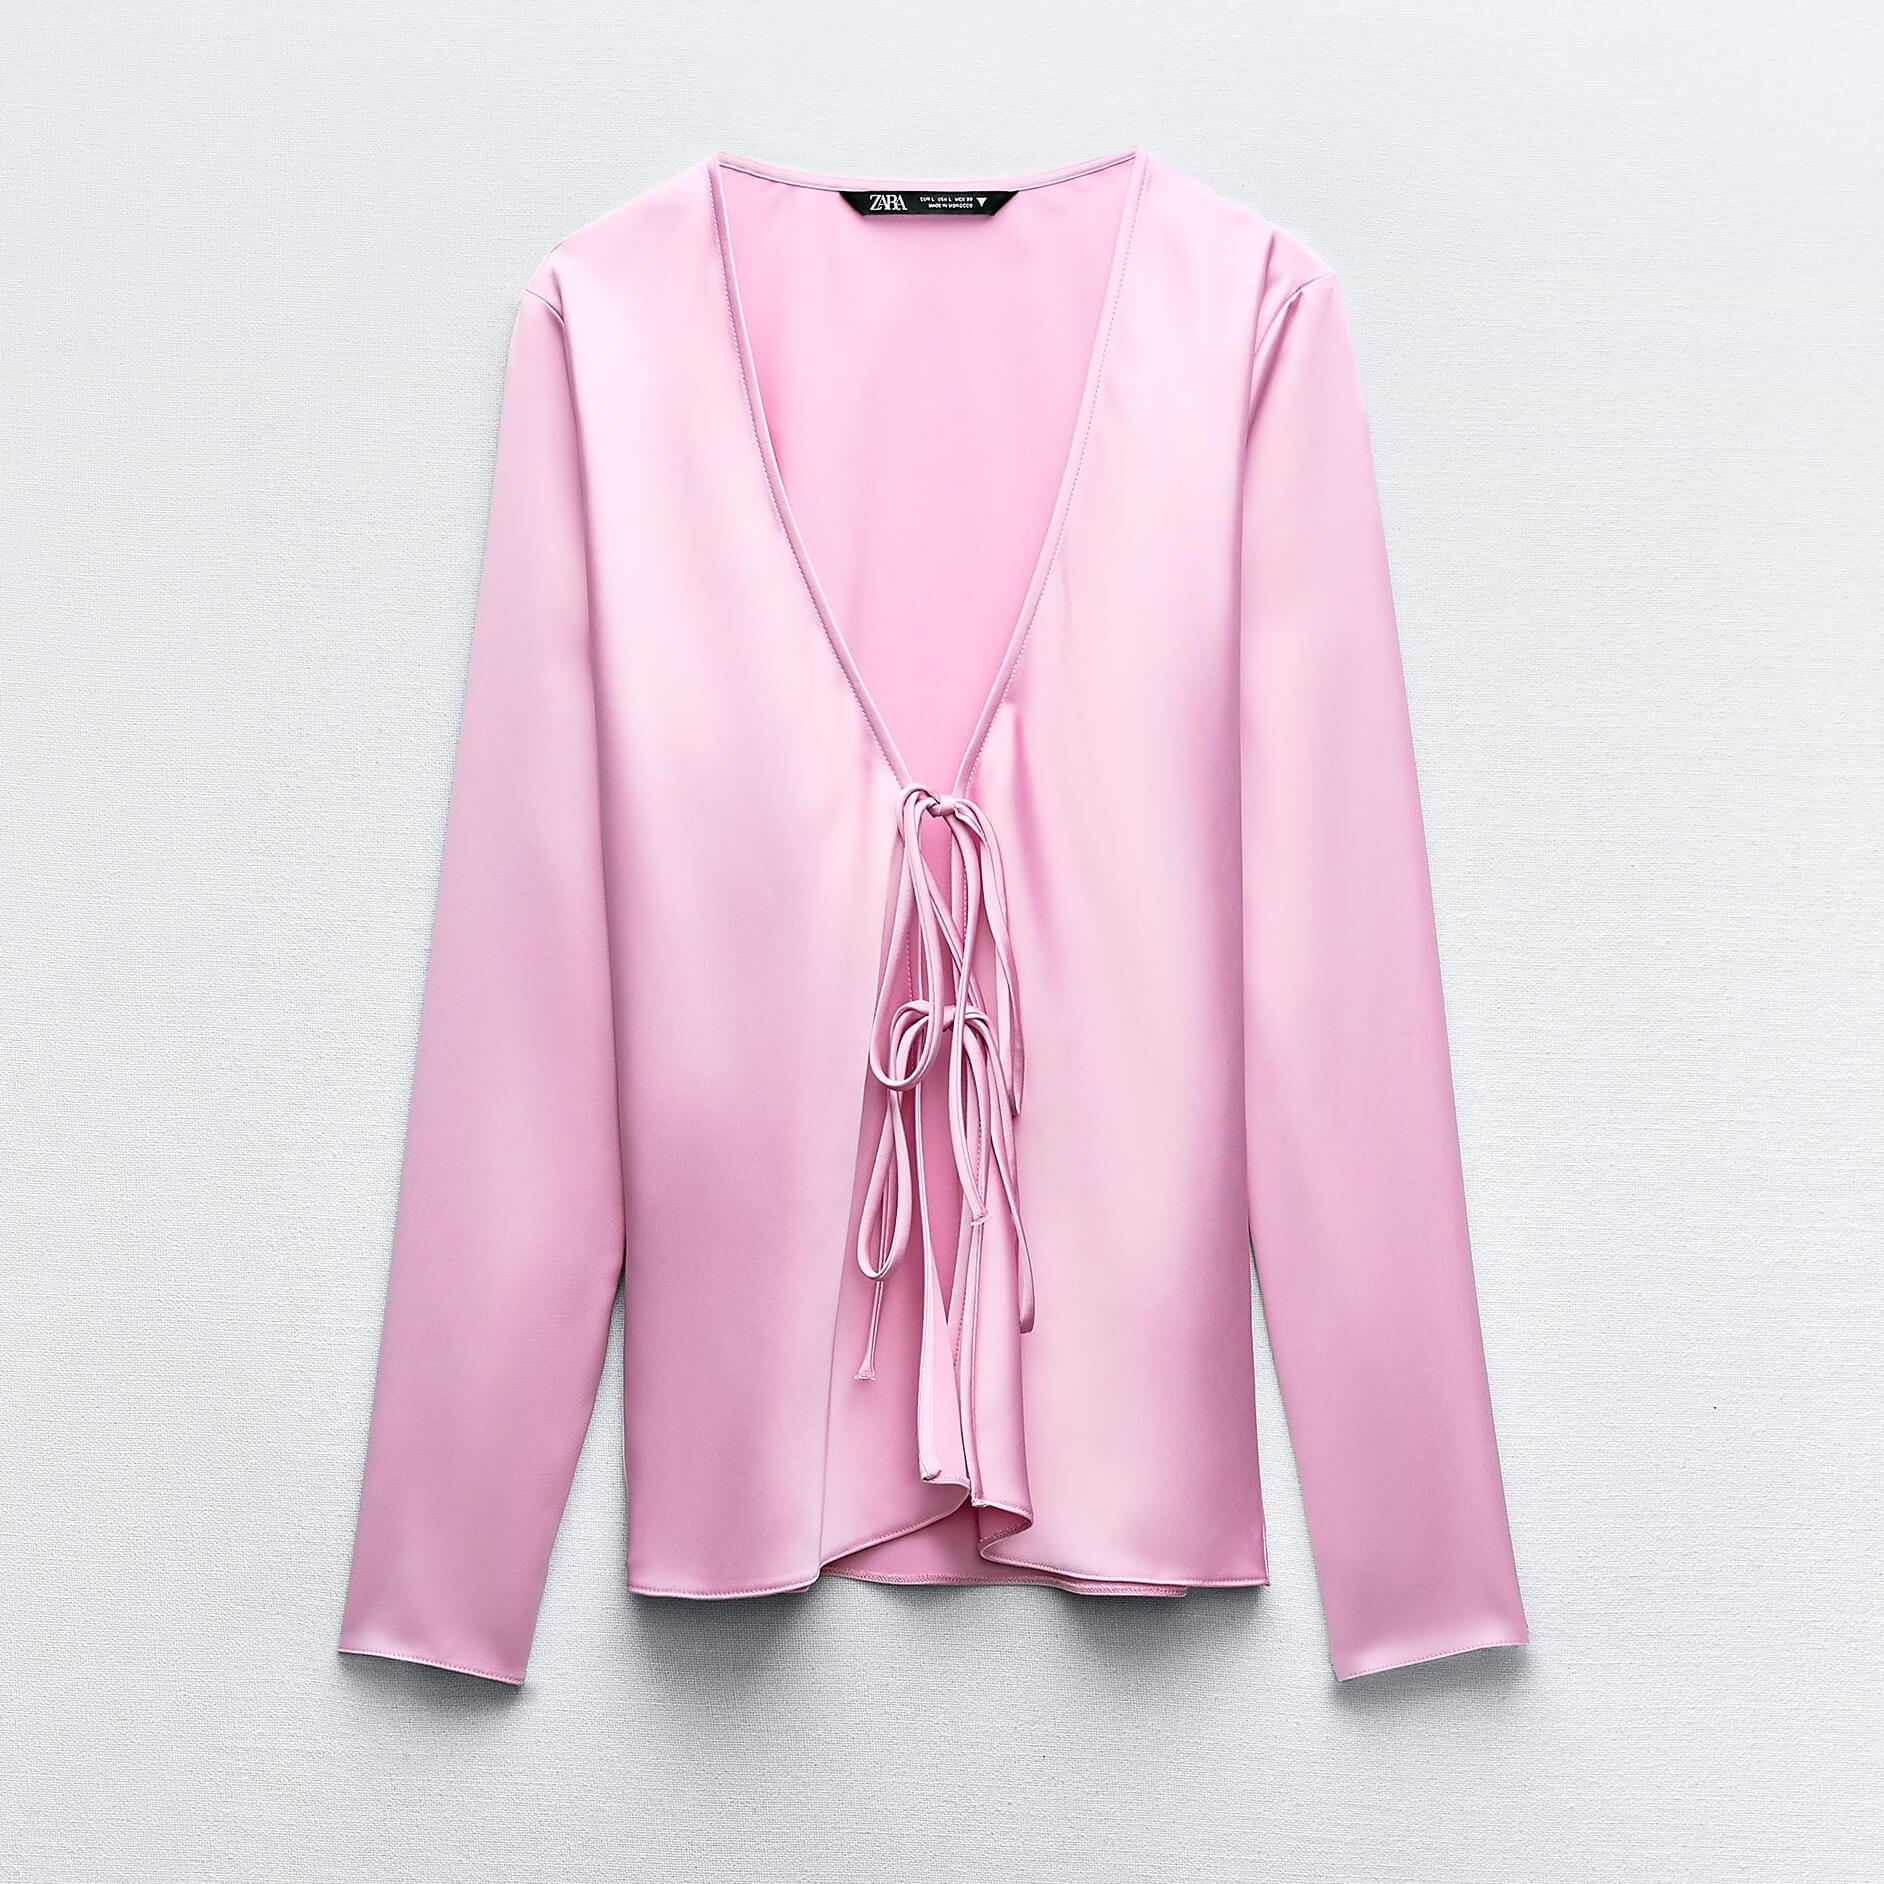 Рубашка Zara Satin With Ties, розовый рубашка zara tailored satin with drawstrings бежевый